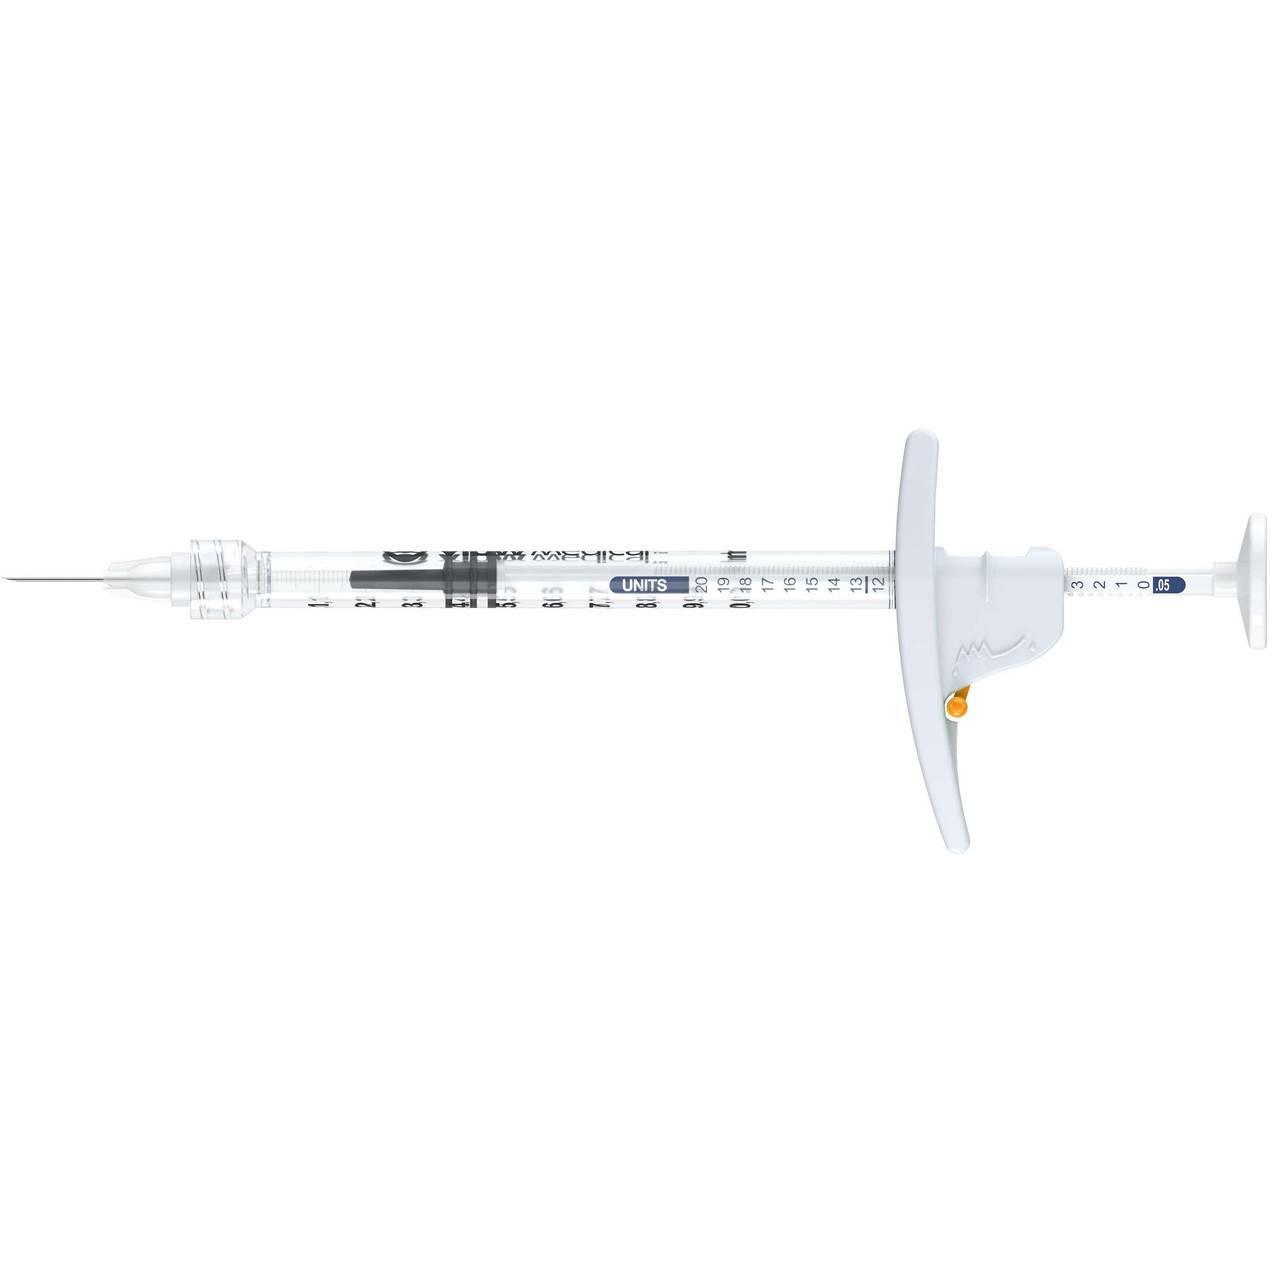 3Dose 1 ml Syringe 100 Orange vlow Medical - Box 10 - UKMEDI